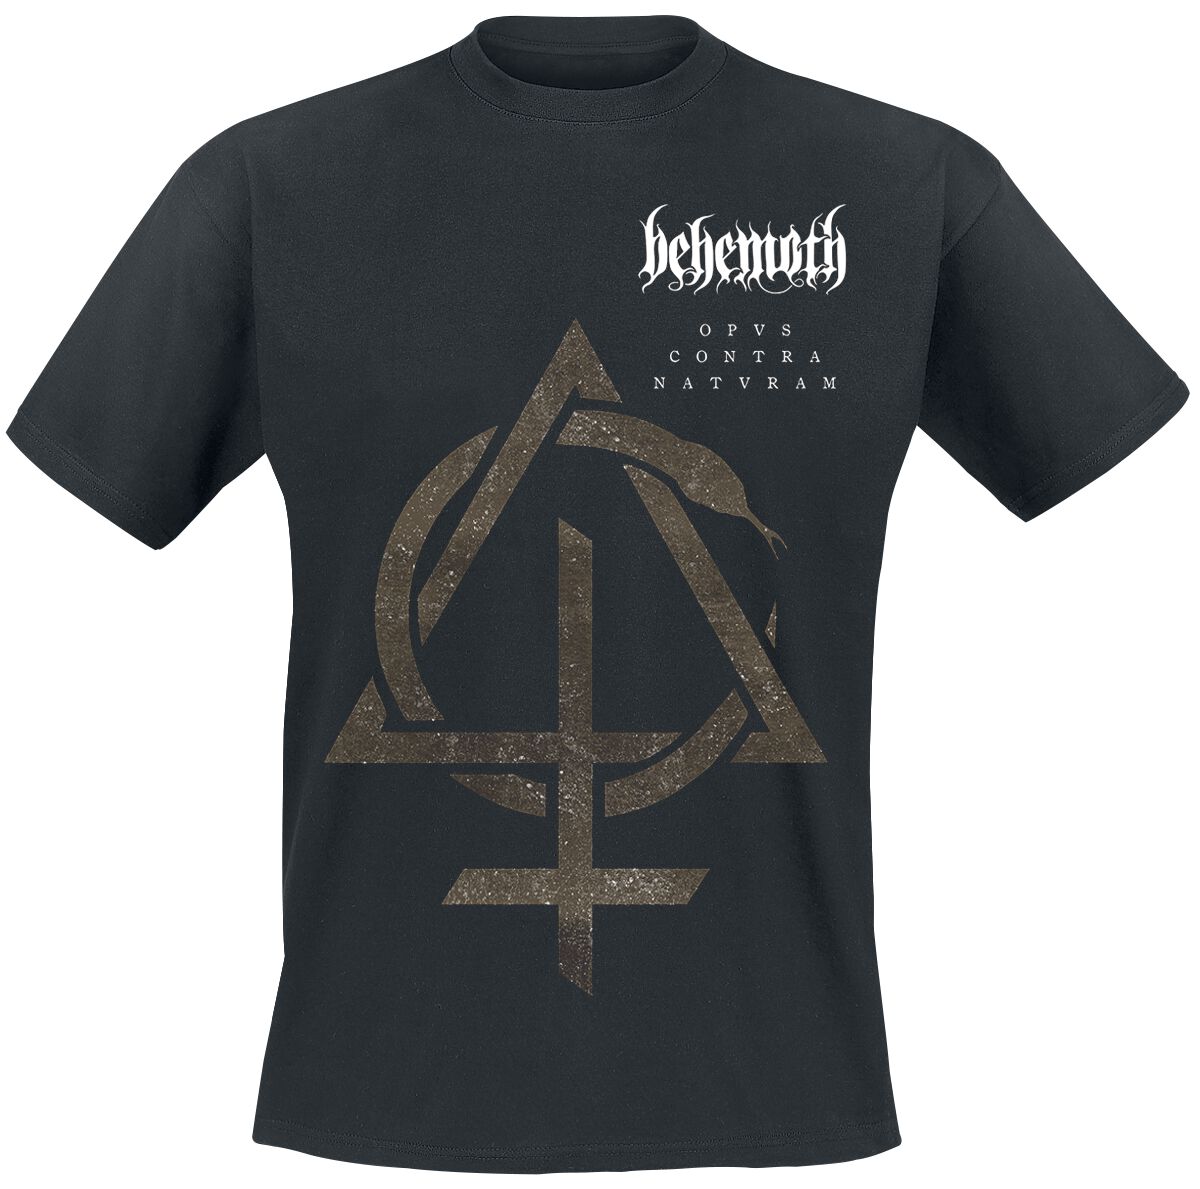 Behemoth T-Shirt - Contra Natvram - S bis 3XL - für Männer - Größe XL - schwarz  - Lizenziertes Merchandise!